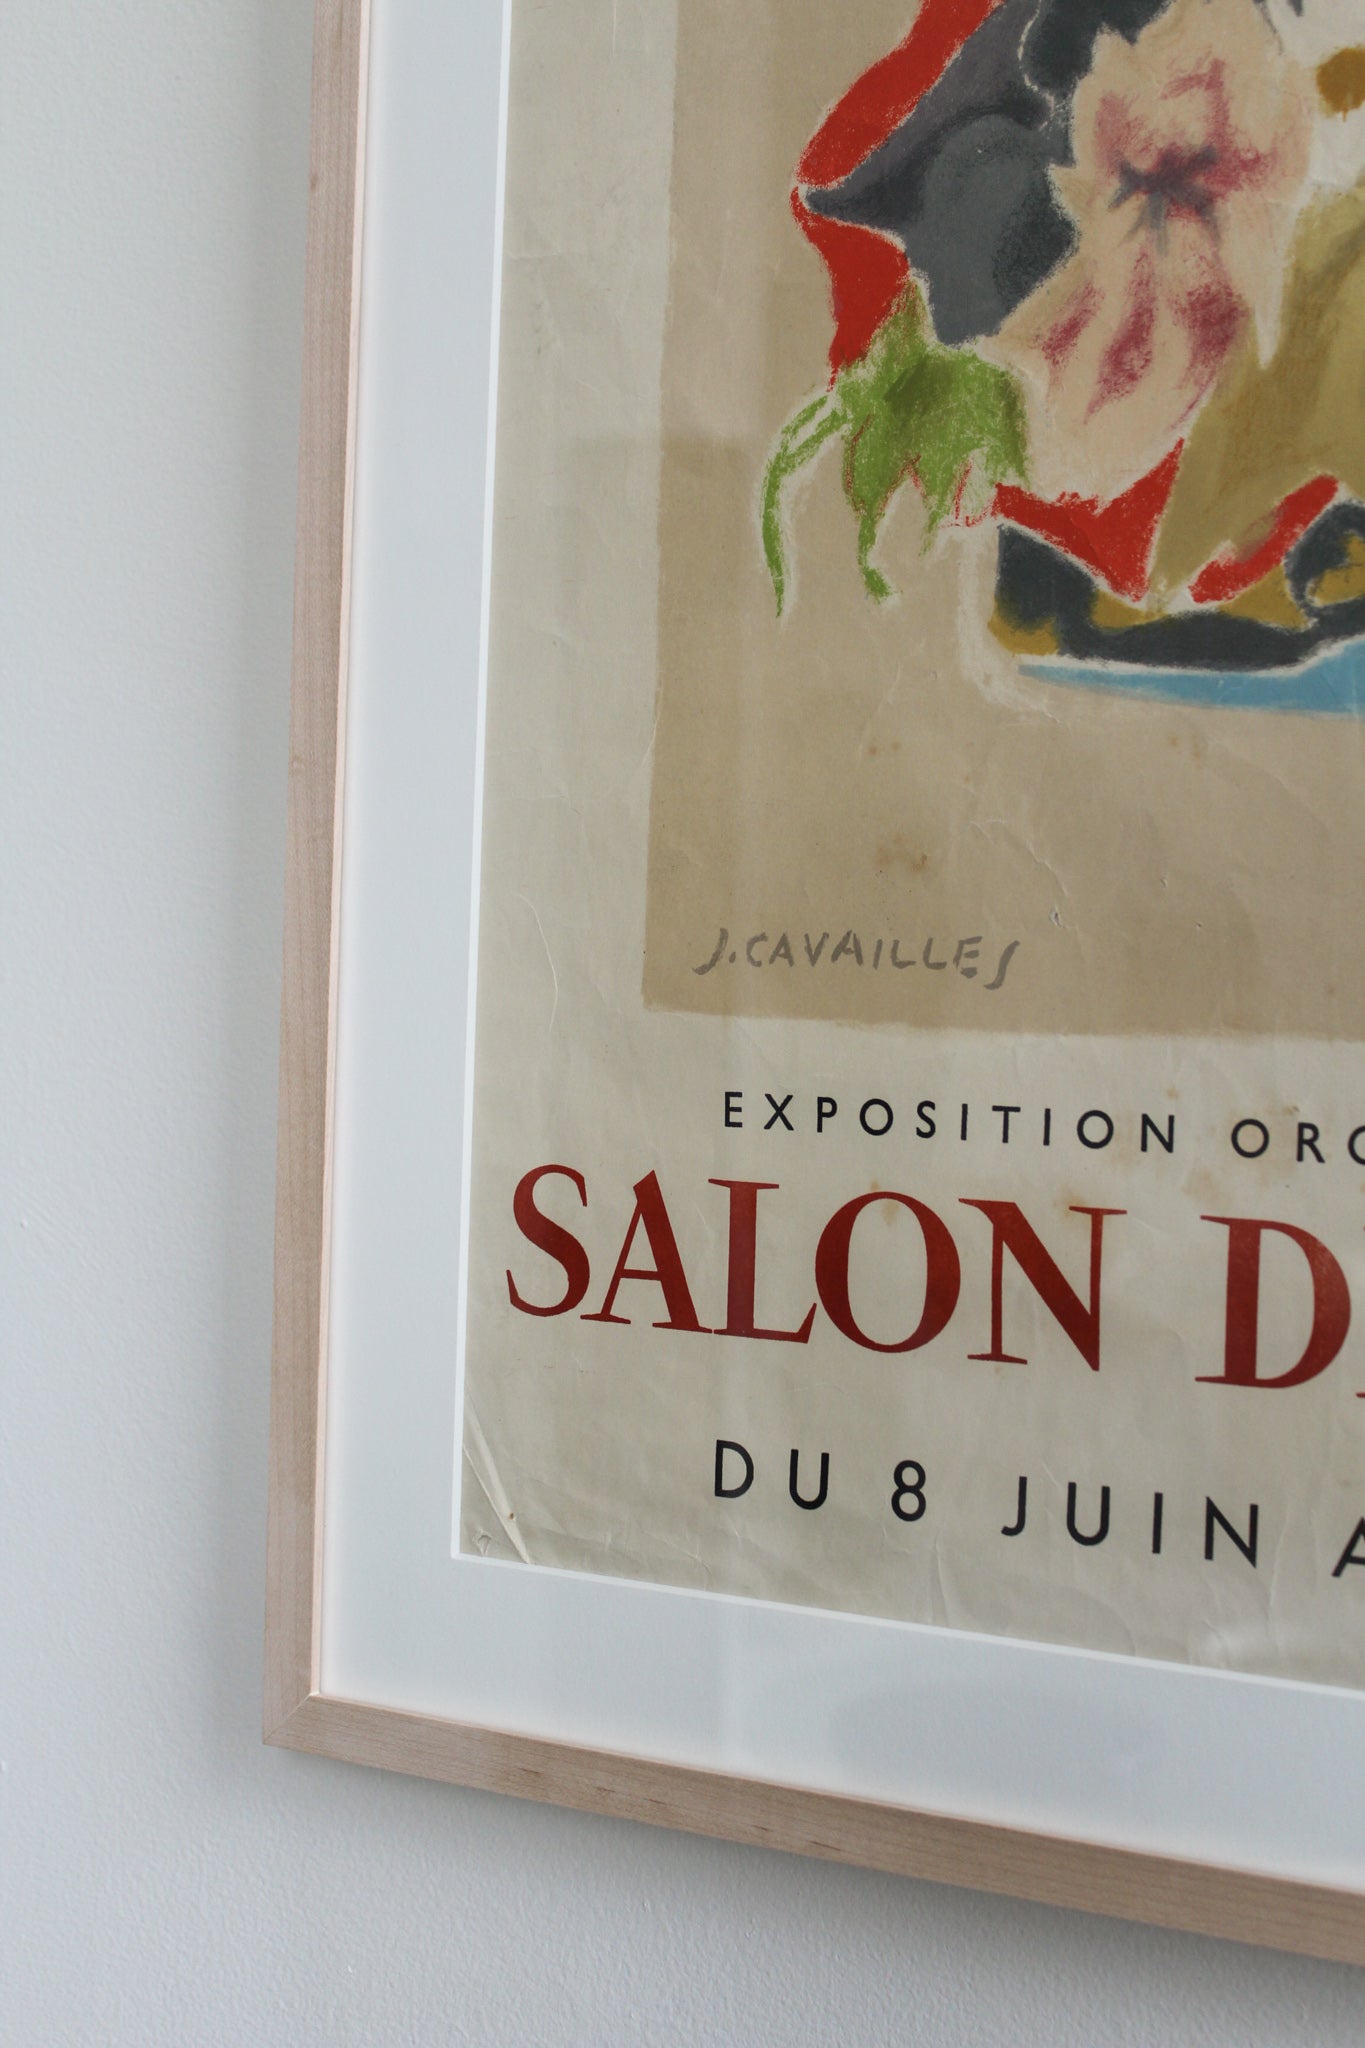 Framed Print - Jean Jules Louis Cavailles, Salon des Tuileries, 1960